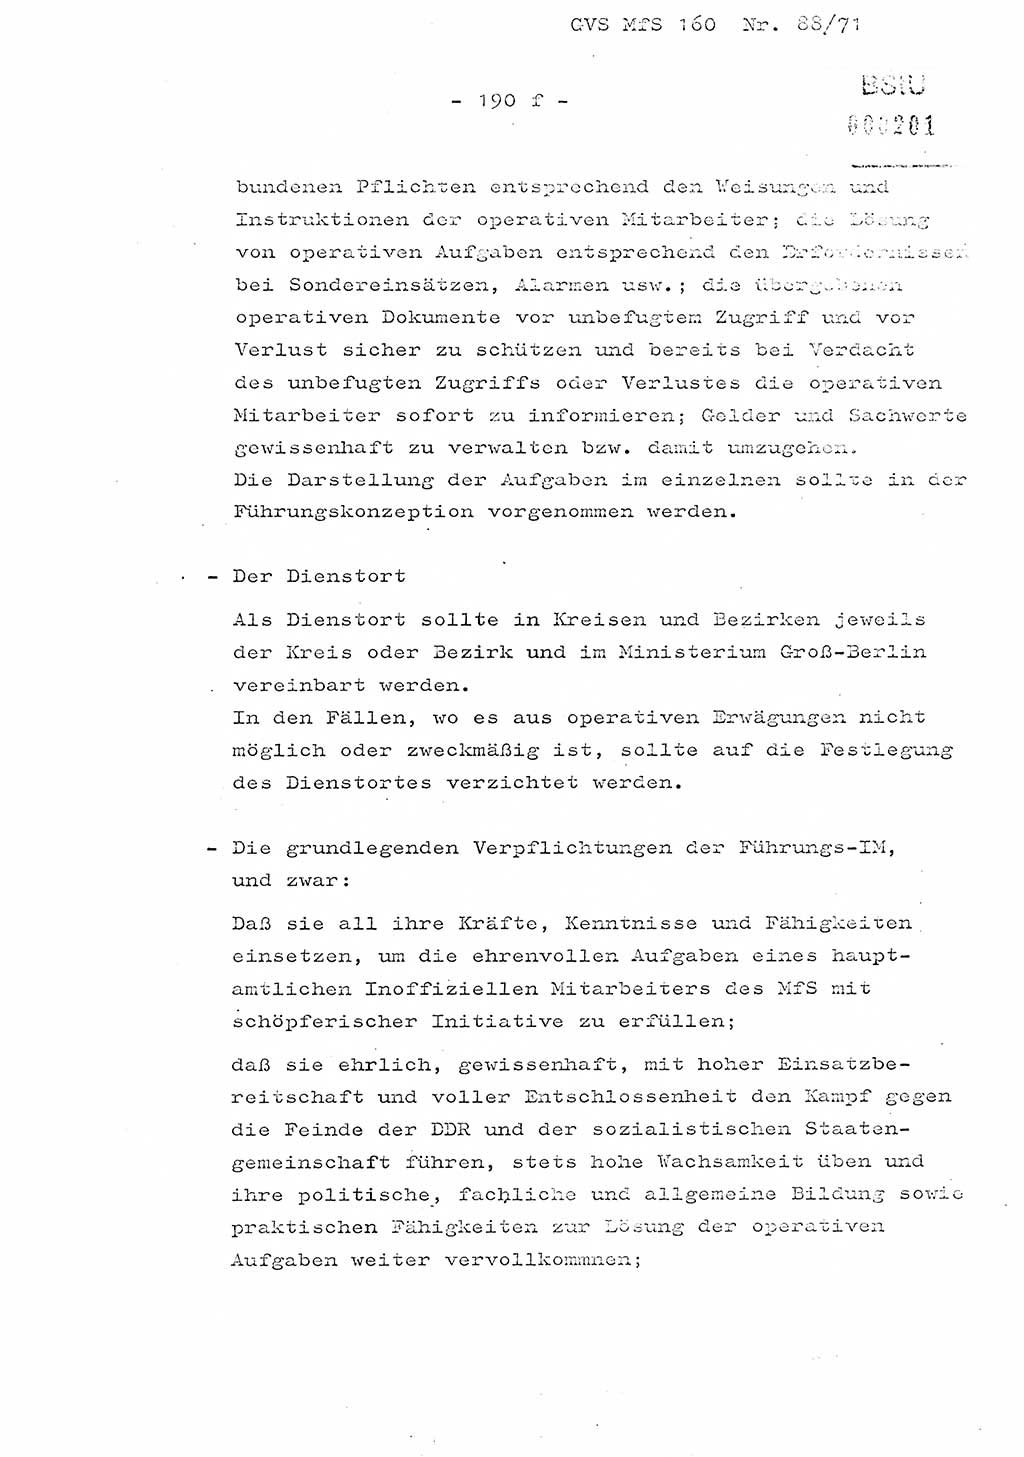 Dissertation Oberstleutnant Josef Schwarz (BV Schwerin), Major Fritz Amm (JHS), Hauptmann Peter Gräßler (JHS), Ministerium für Staatssicherheit (MfS) [Deutsche Demokratische Republik (DDR)], Juristische Hochschule (JHS), Geheime Verschlußsache (GVS) 160-88/71, Potsdam 1972, Seite 190/6 (Diss. MfS DDR JHS GVS 160-88/71 1972, S. 190/6)